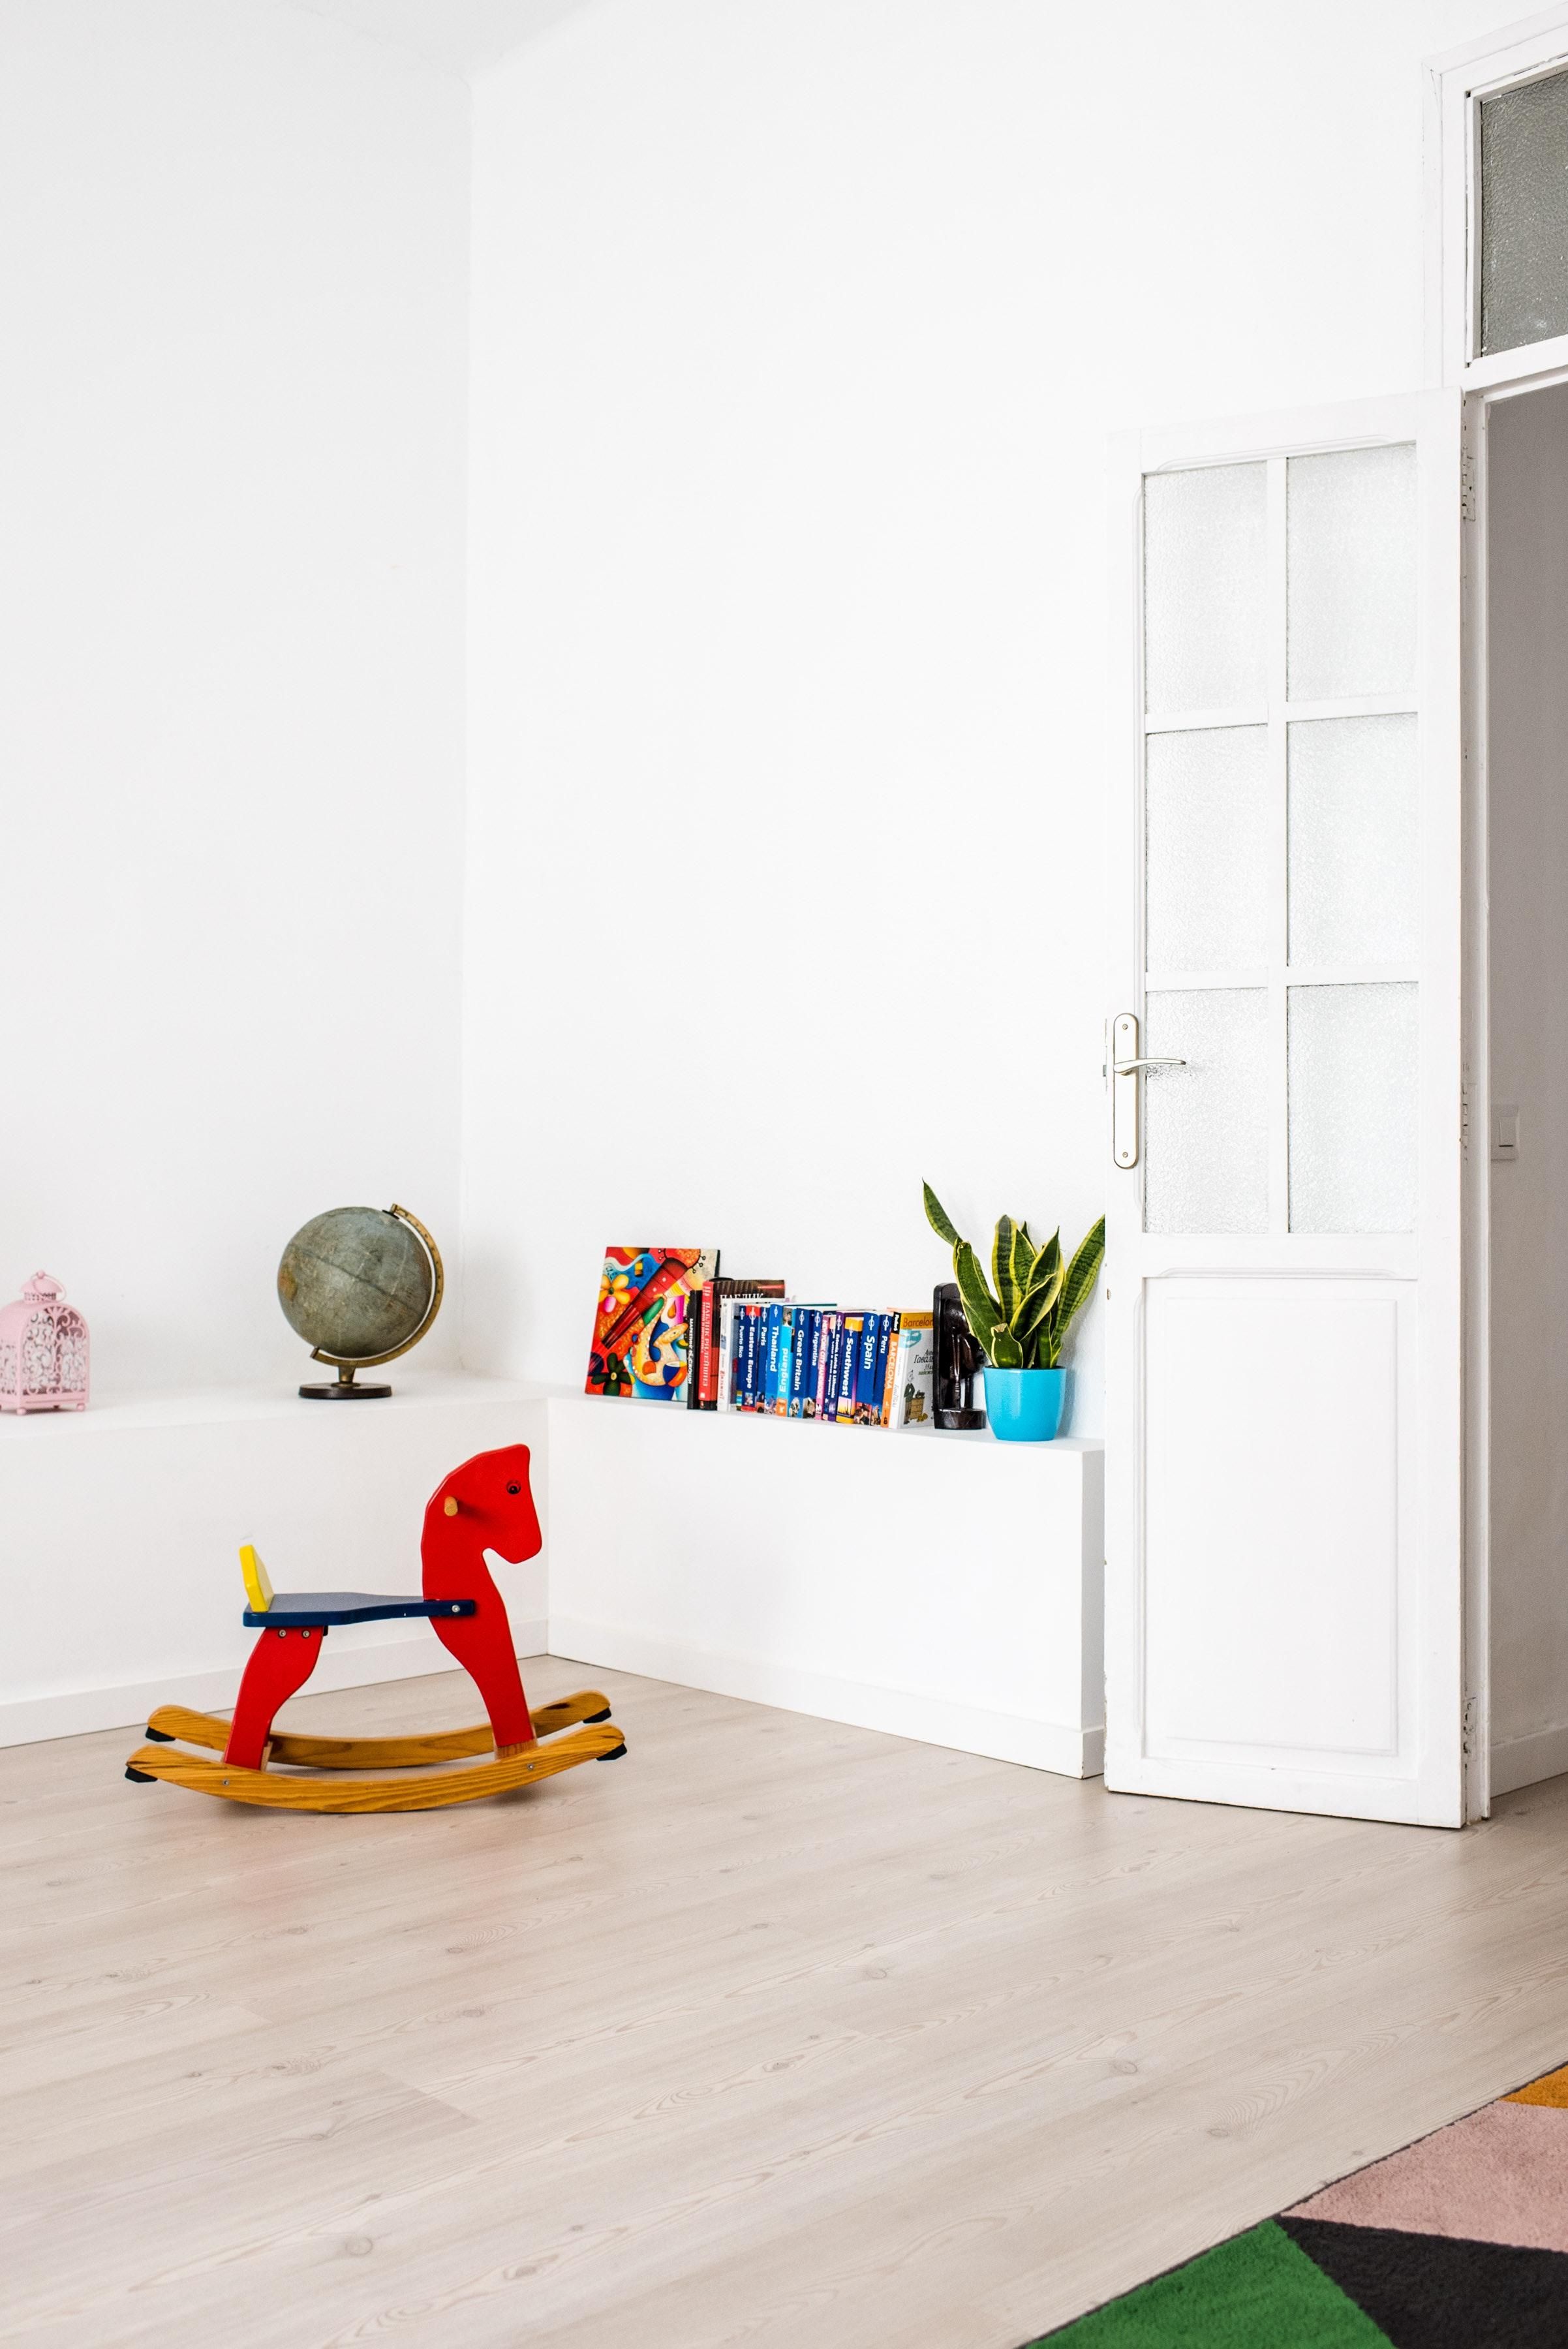 Безтурботна атмосфера дитинства: як створити ідеальну дитячу кімнату - Дизайн 24